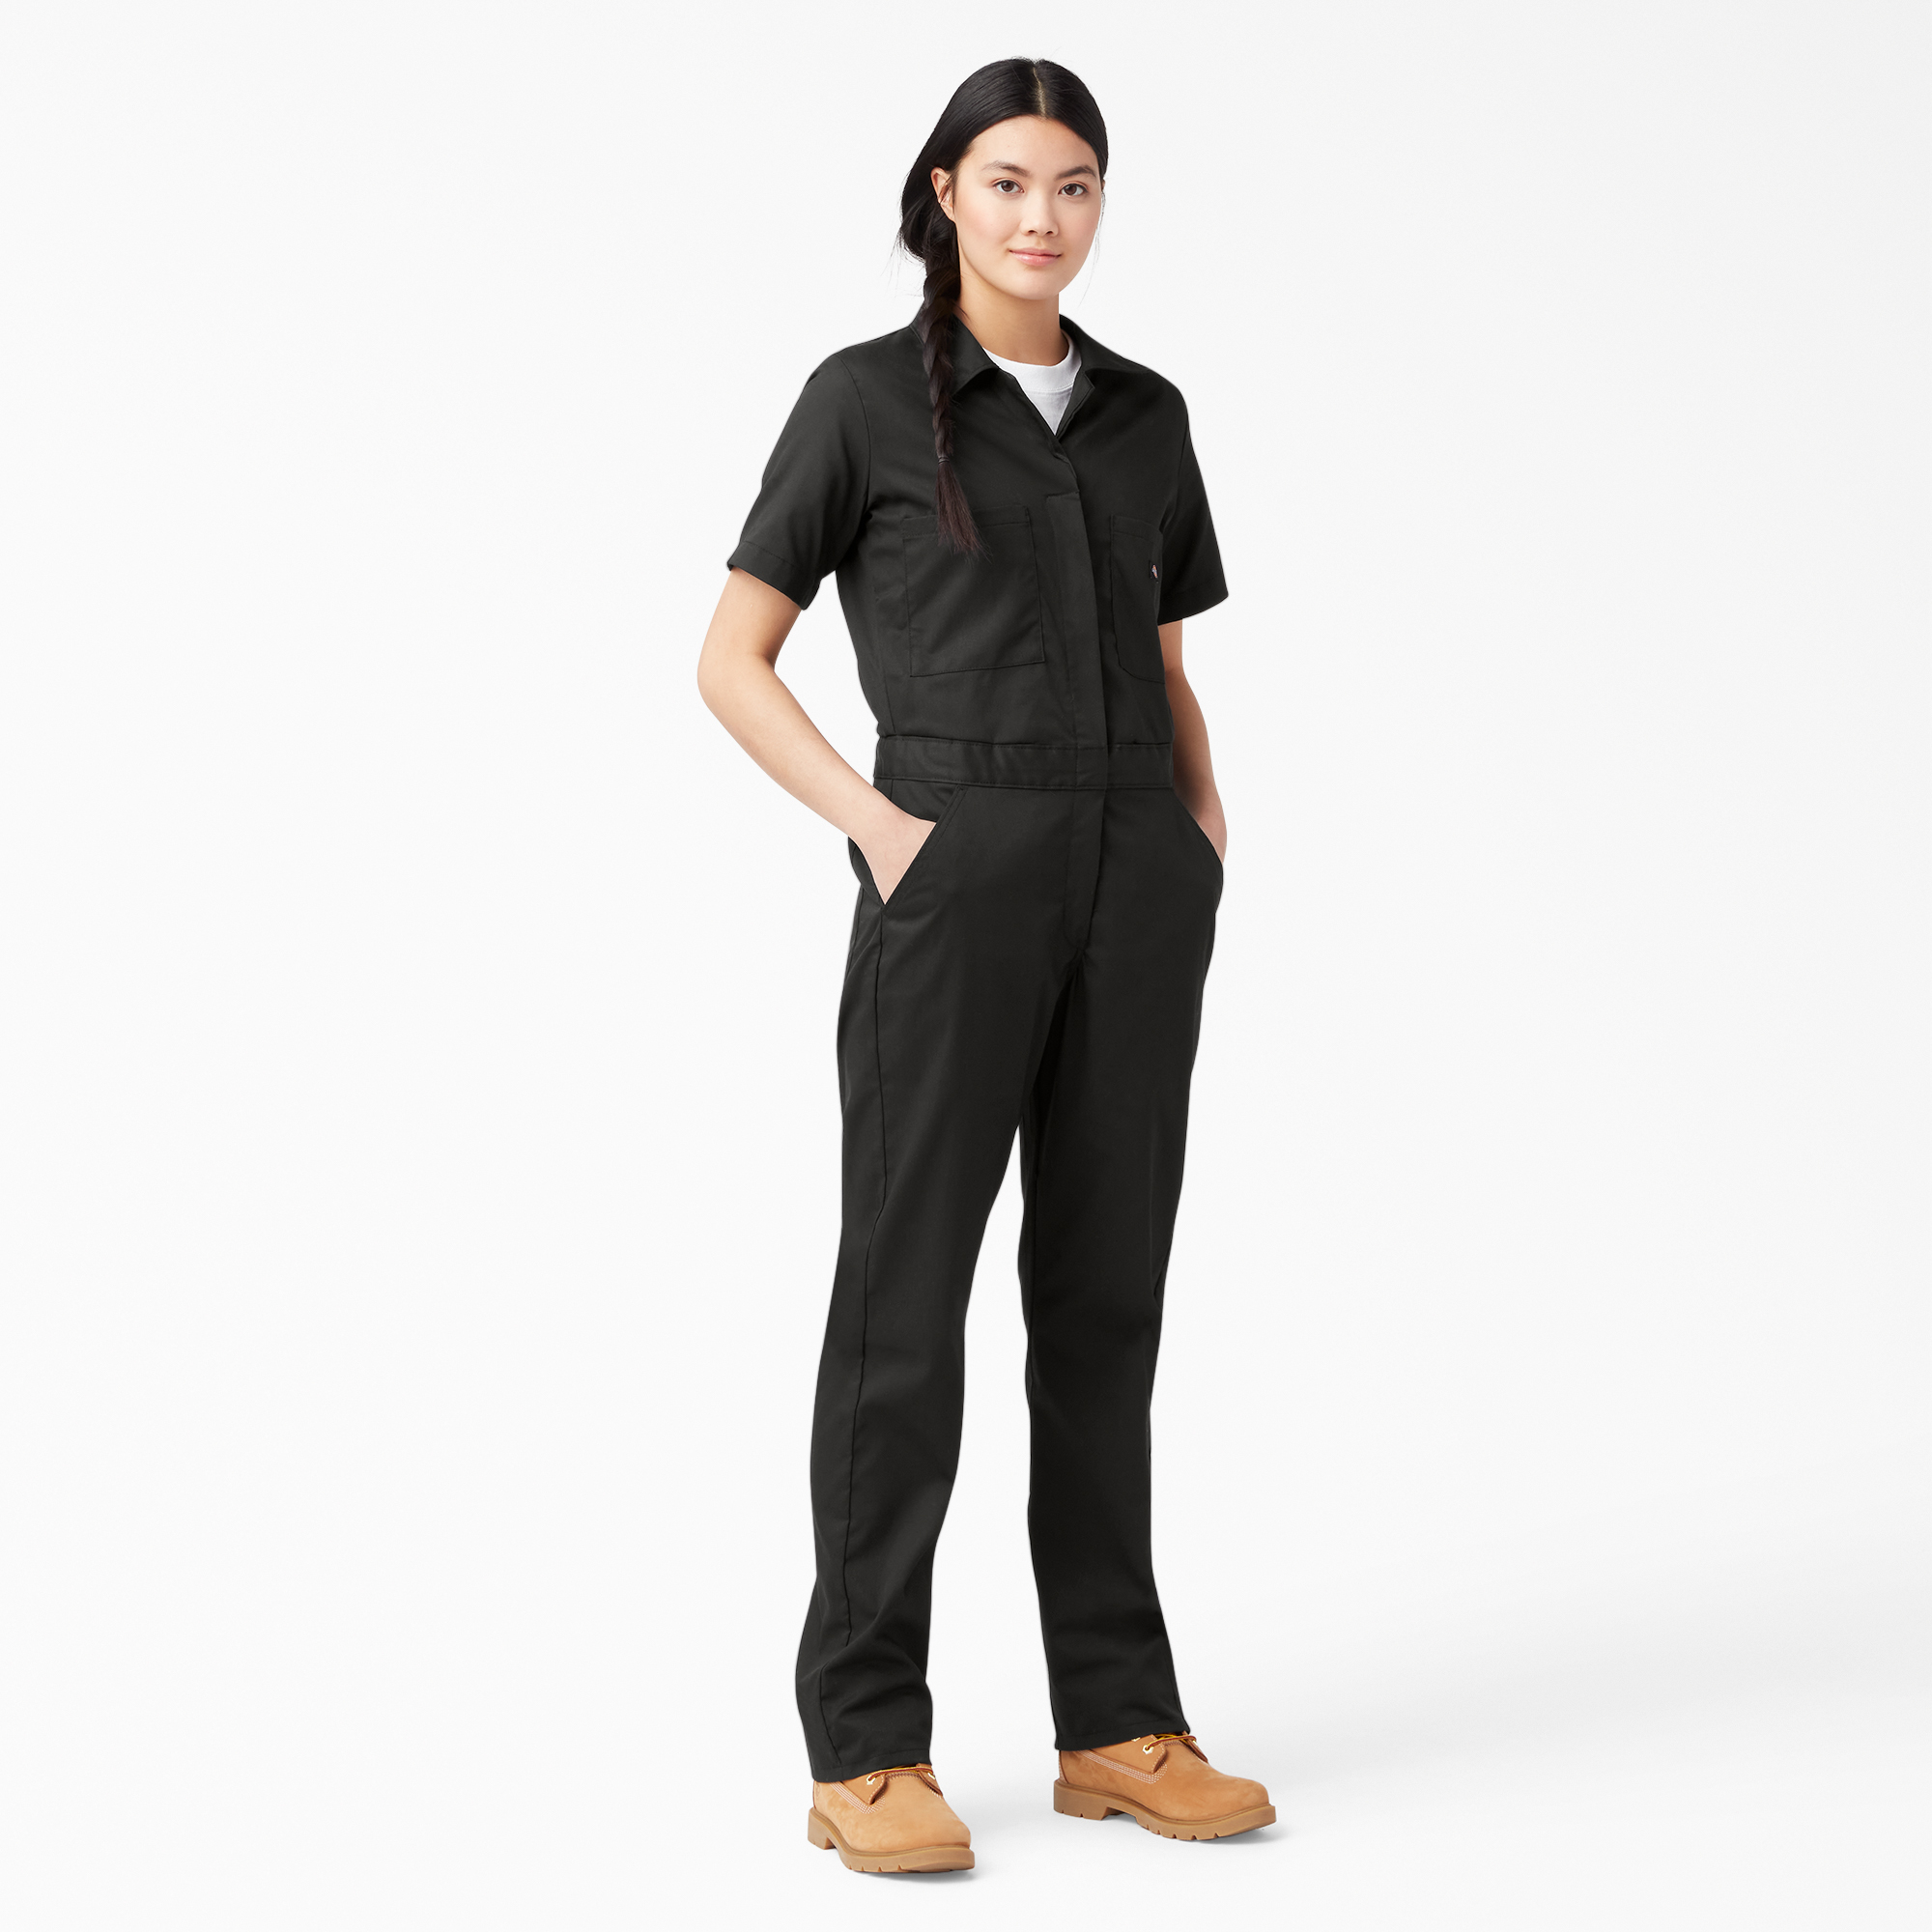 Women's FLEX Cooling Short Sleeve Coveralls - Black (BK)